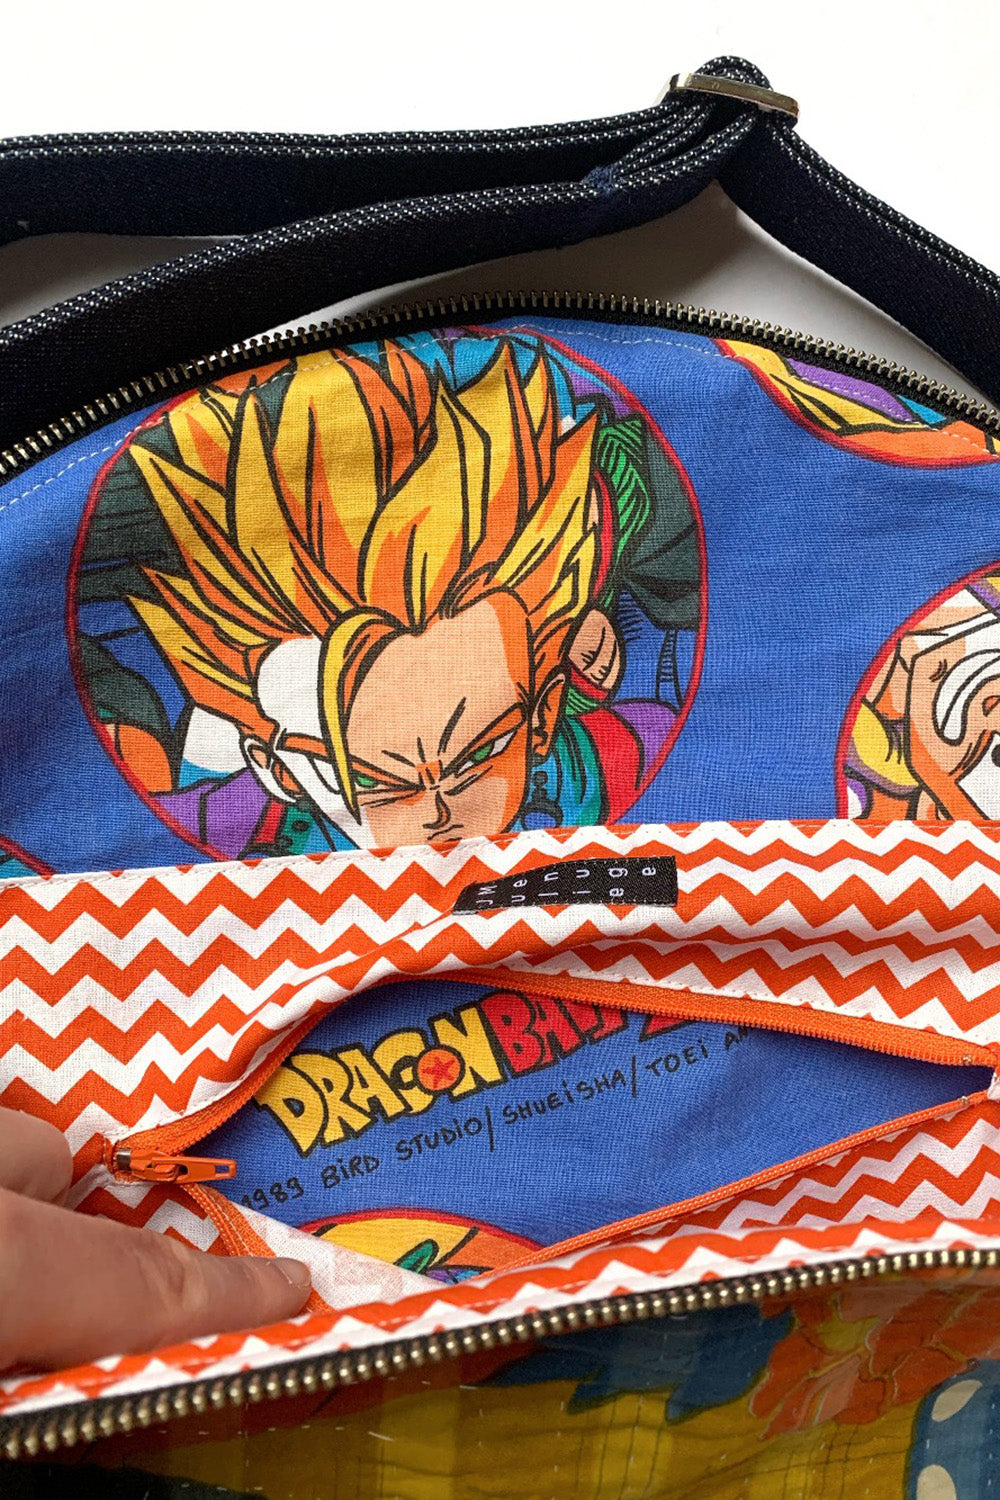 Dragon Ball Z Logo Mini Sling Backpack Orange